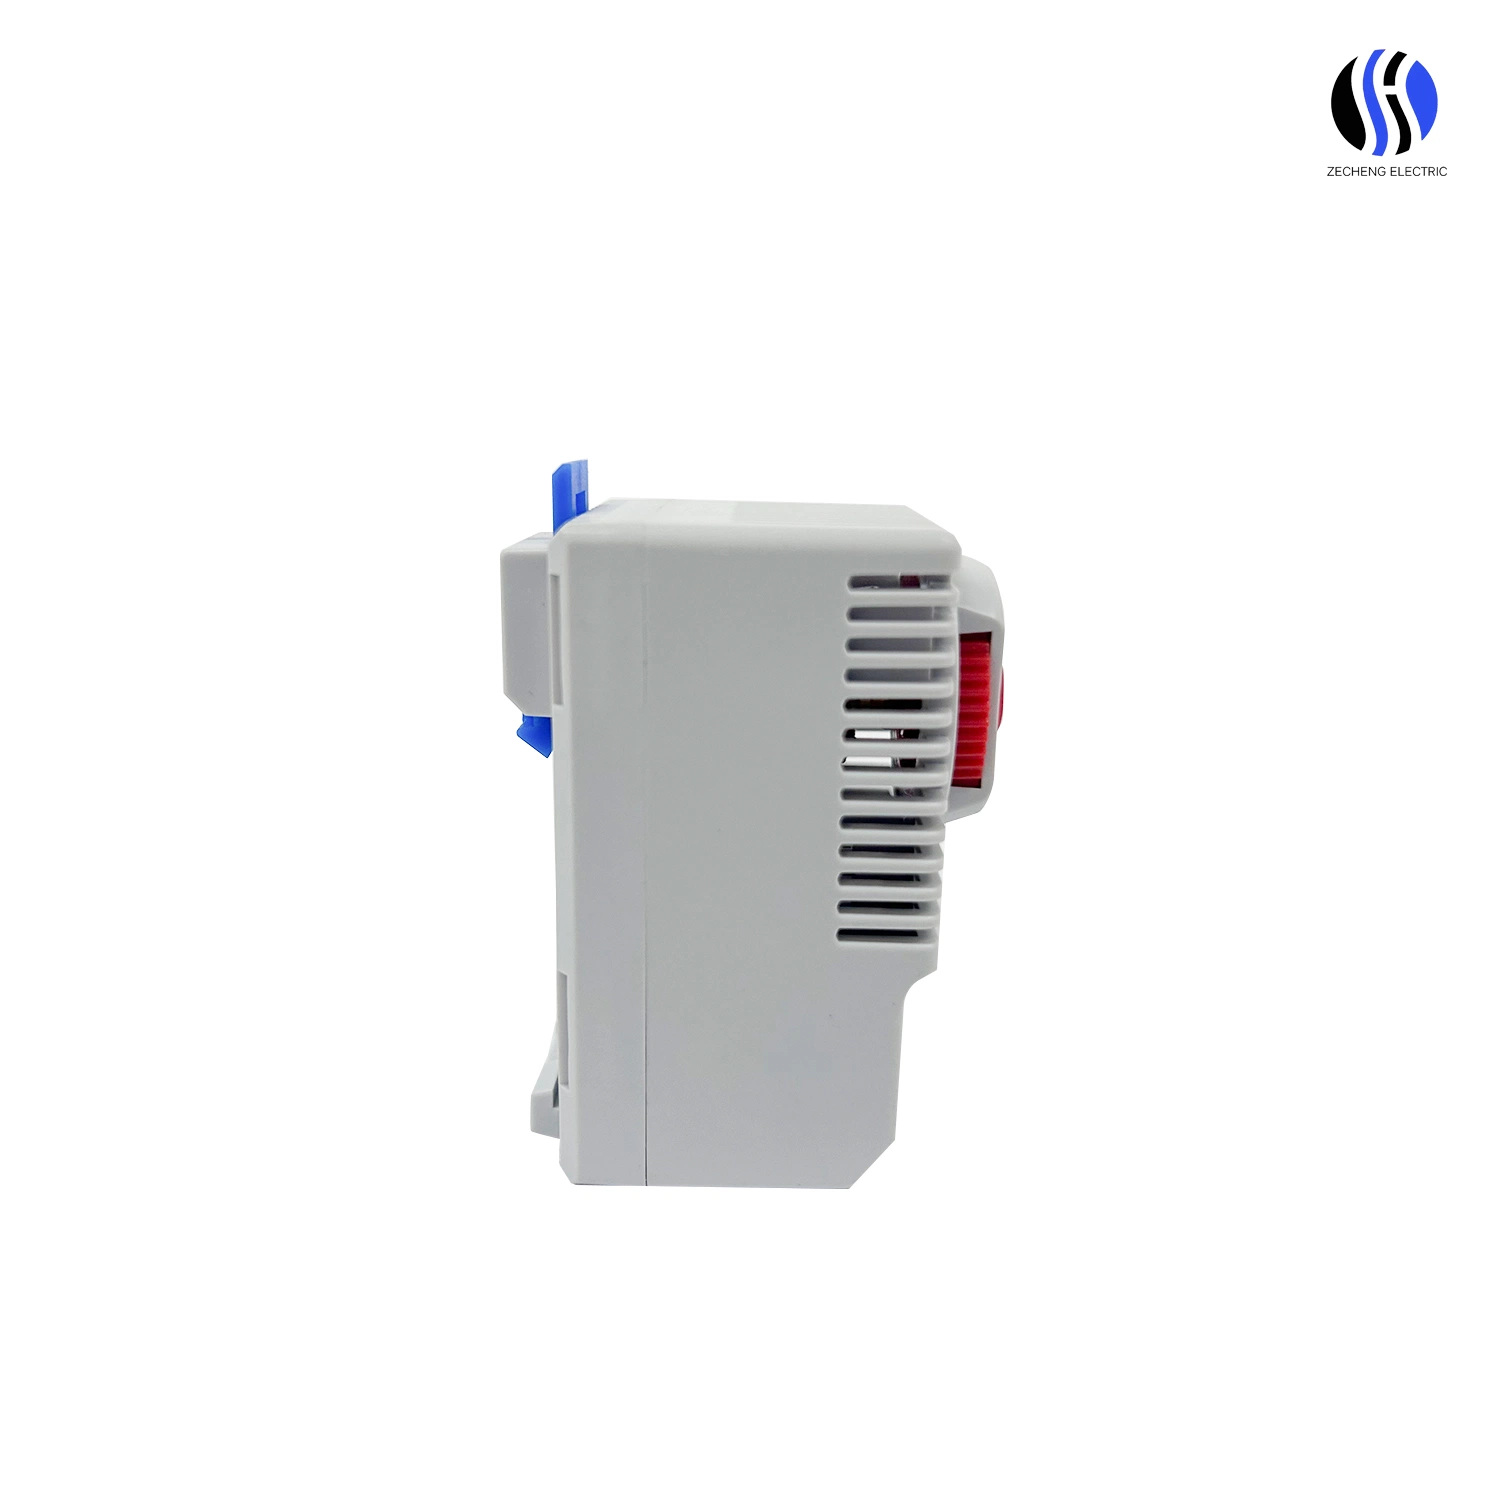 CE normalmente cerrado Control de temperatura industrial para calentamiento Calefacción bimetálica Termostato